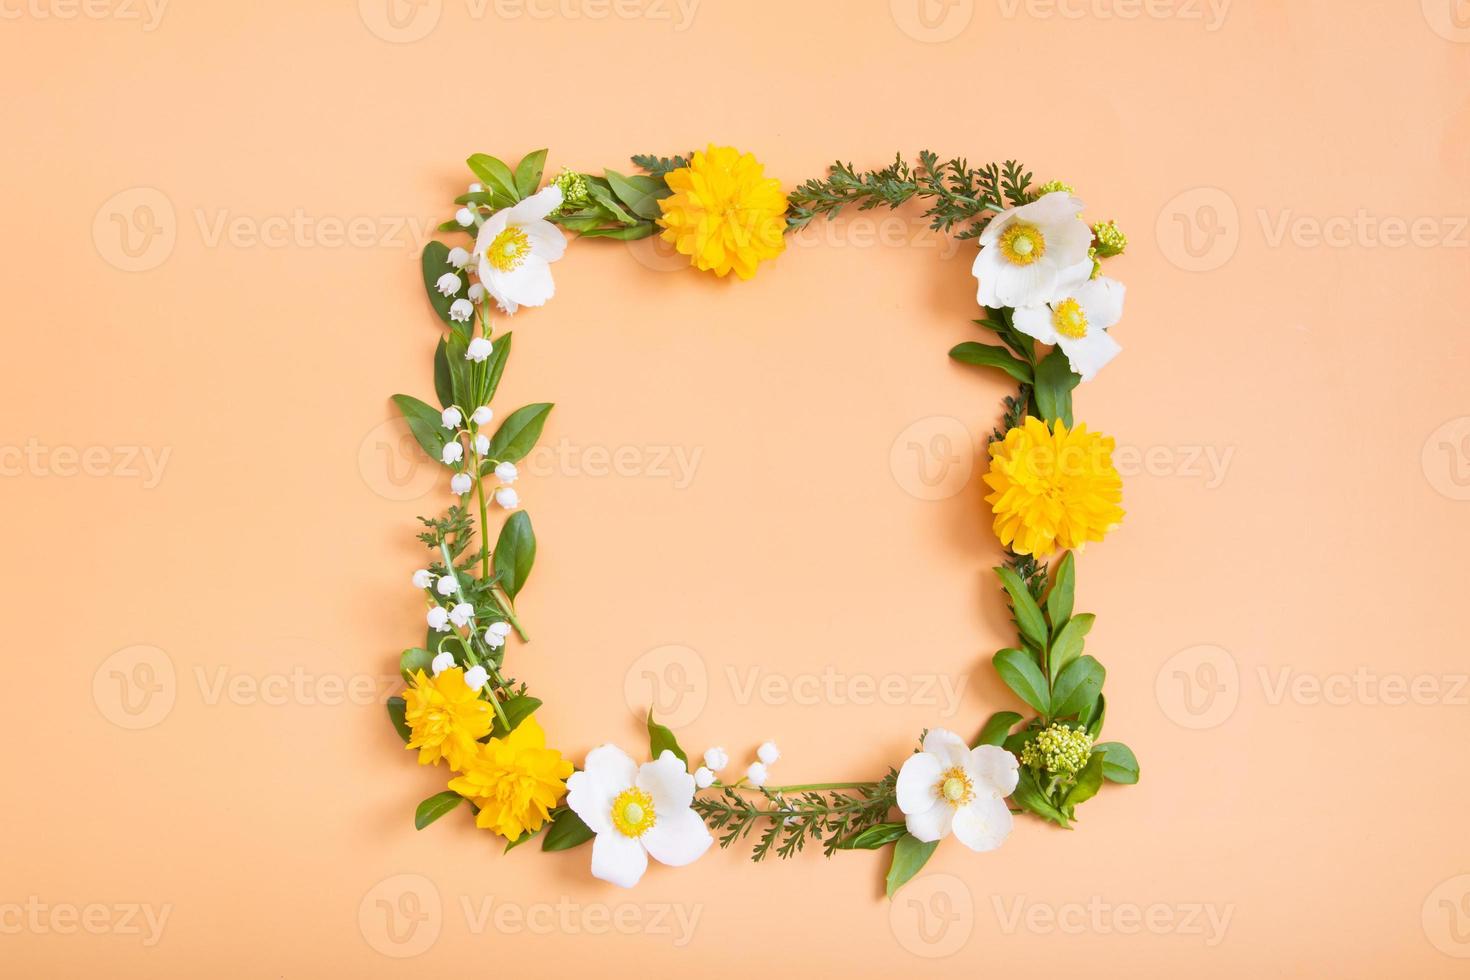 composición de verano o primavera sobre un fondo naranja. flores amarillas y blancas y hojas verdes con una vista superior de corona de espacio de copia. verano, concepto floral de primavera foto